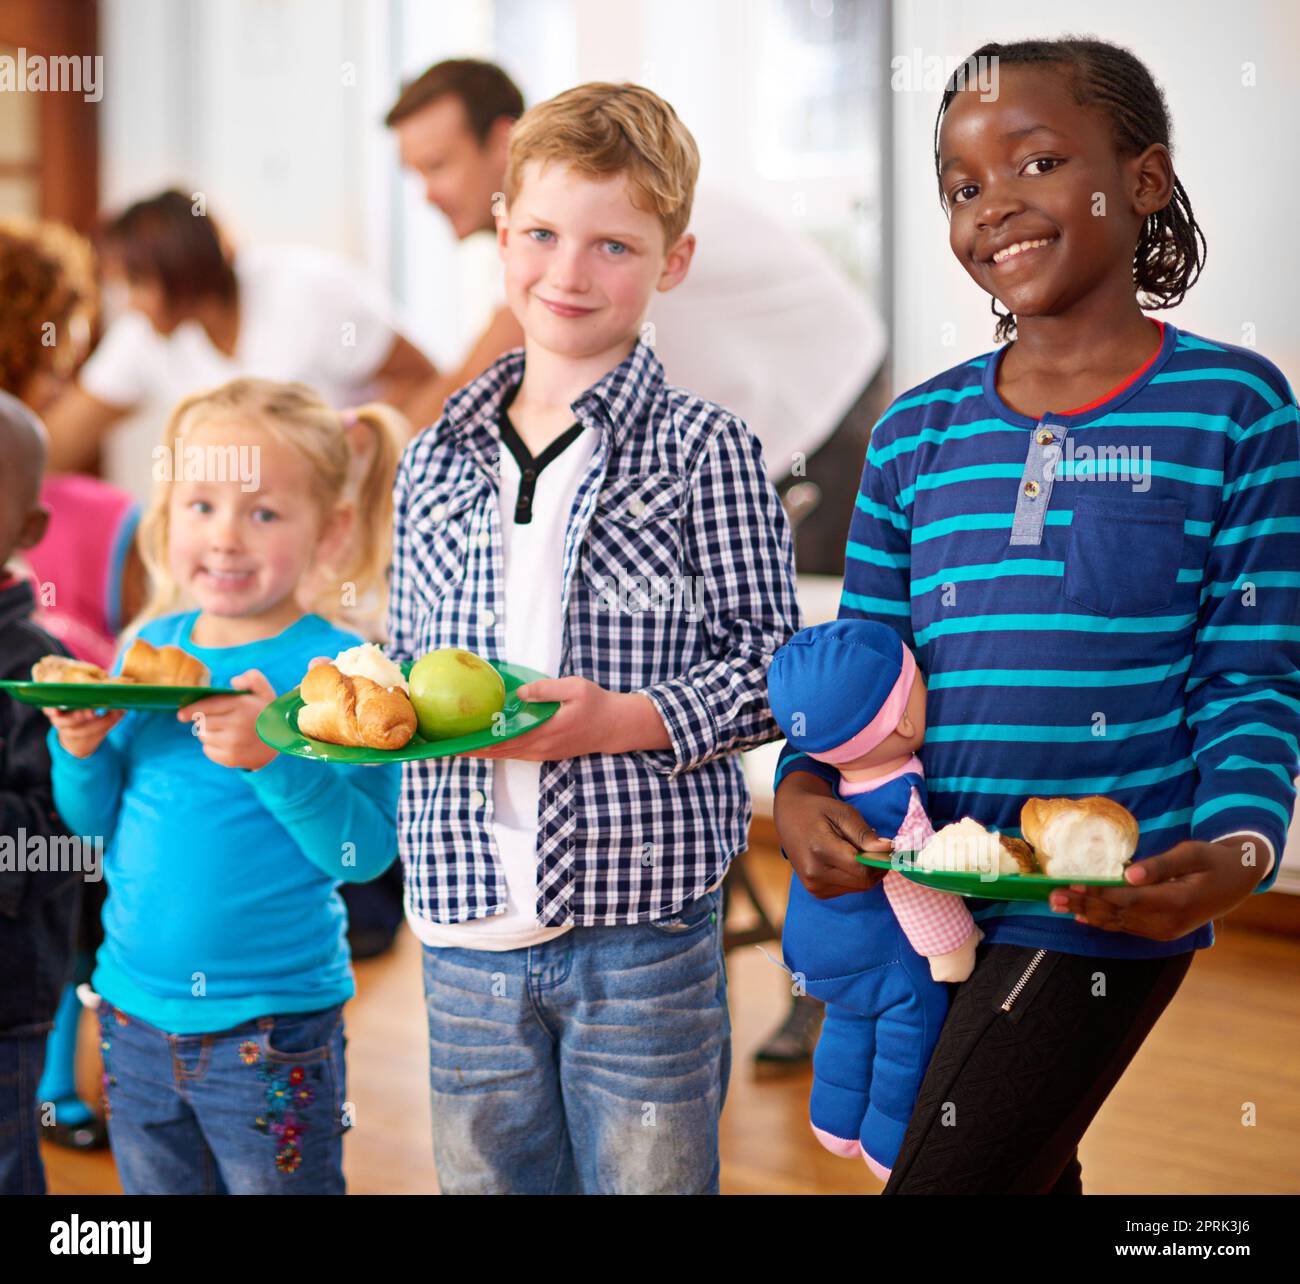 S'assurer qu'ils mangent sainement. Portrait des enfants avec des assiettes de nourriture avec des bénévoles servant de la nourriture en arrière-plan. Banque D'Images